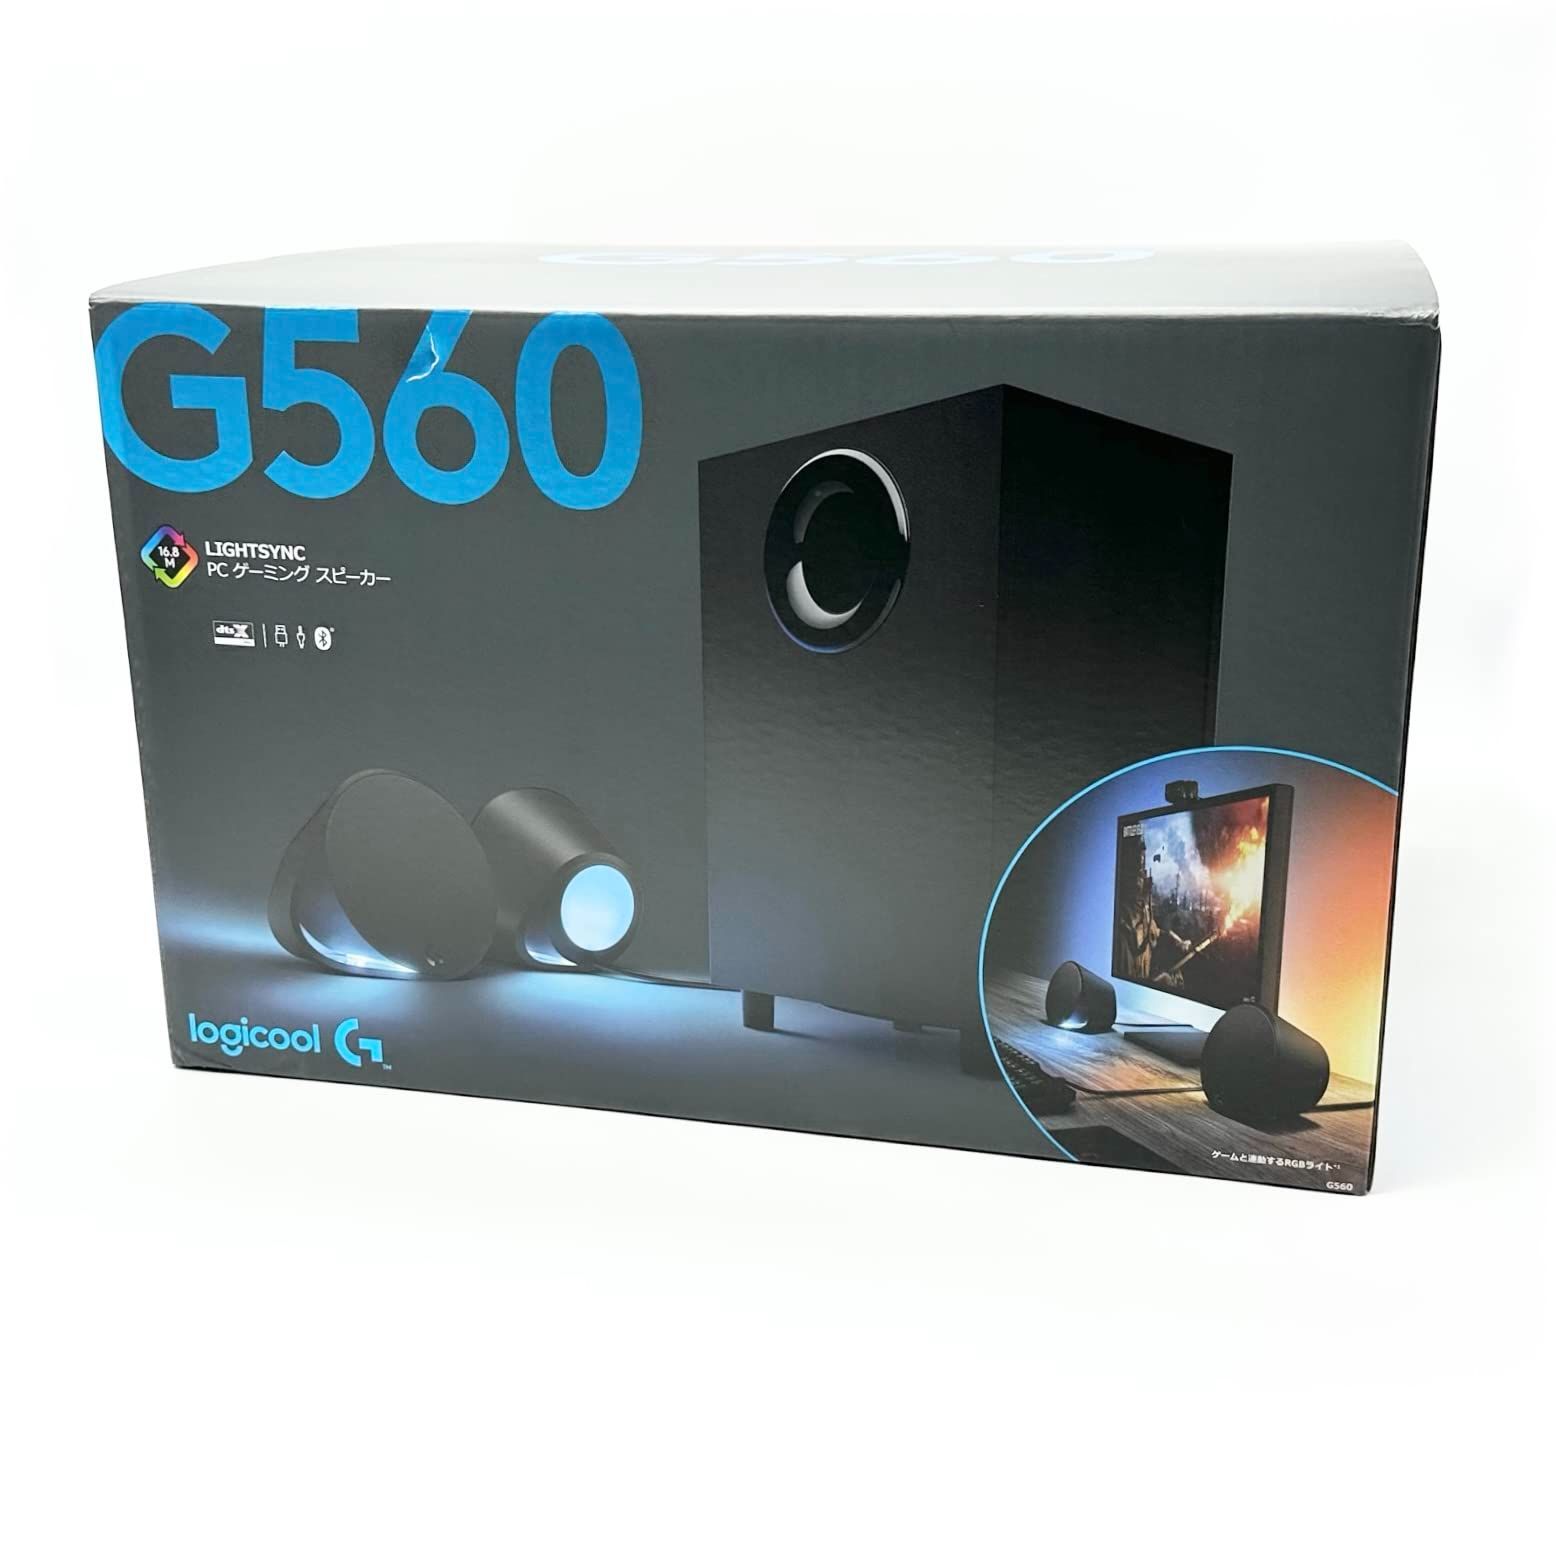 Logicool G ゲーミング スピーカー G560 スピーカー 4台接続